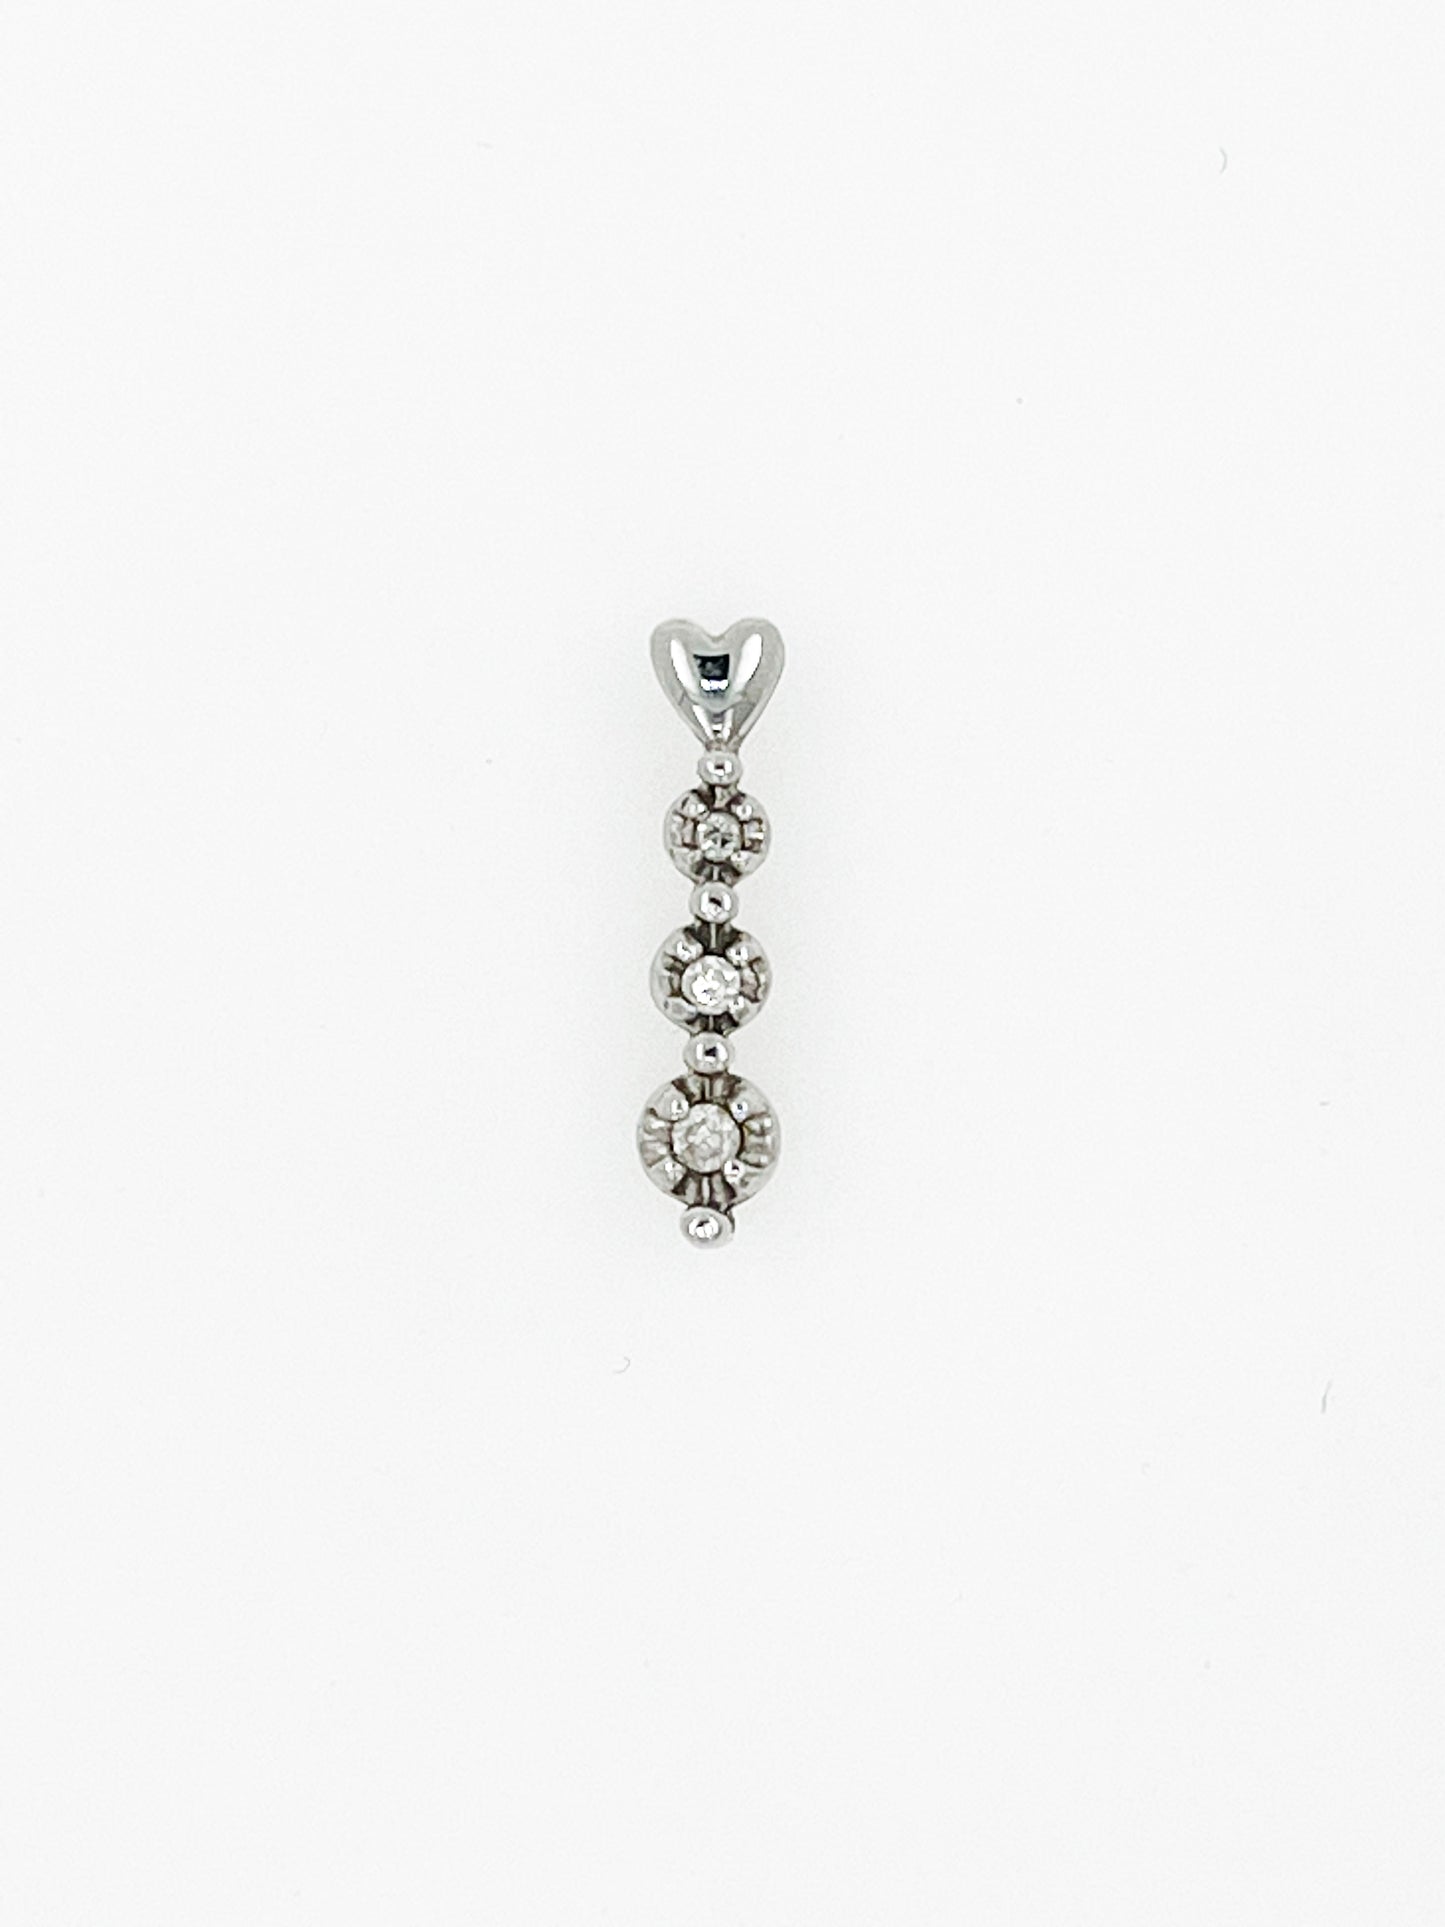 Natural 3 Diamond Heart Pendant in 10k White Gold